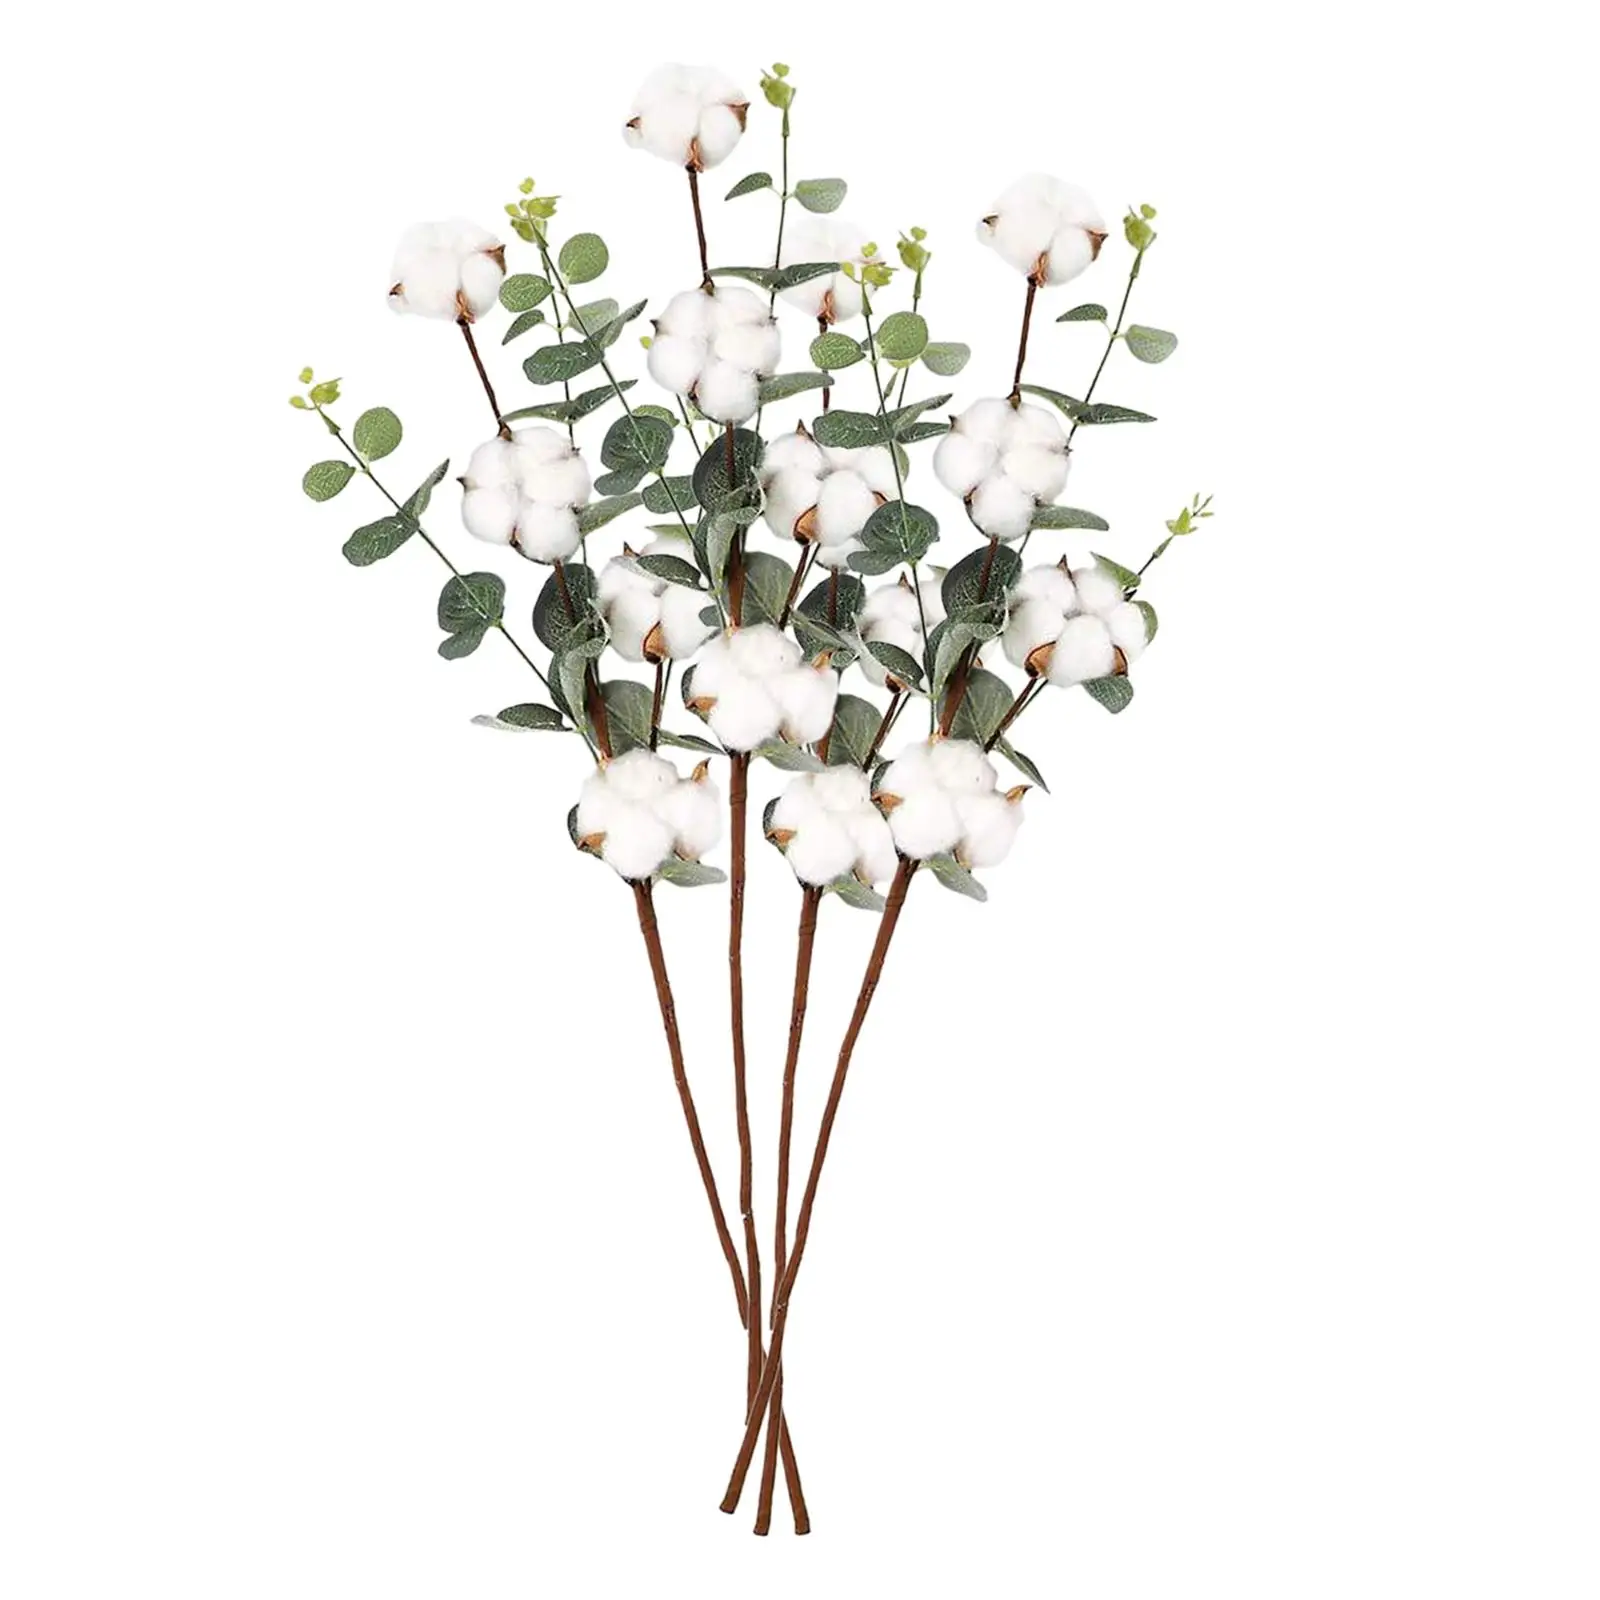 4x Faux Cotton Flower Branch with Eucalyptus Leaves Decoration Cotton Stems